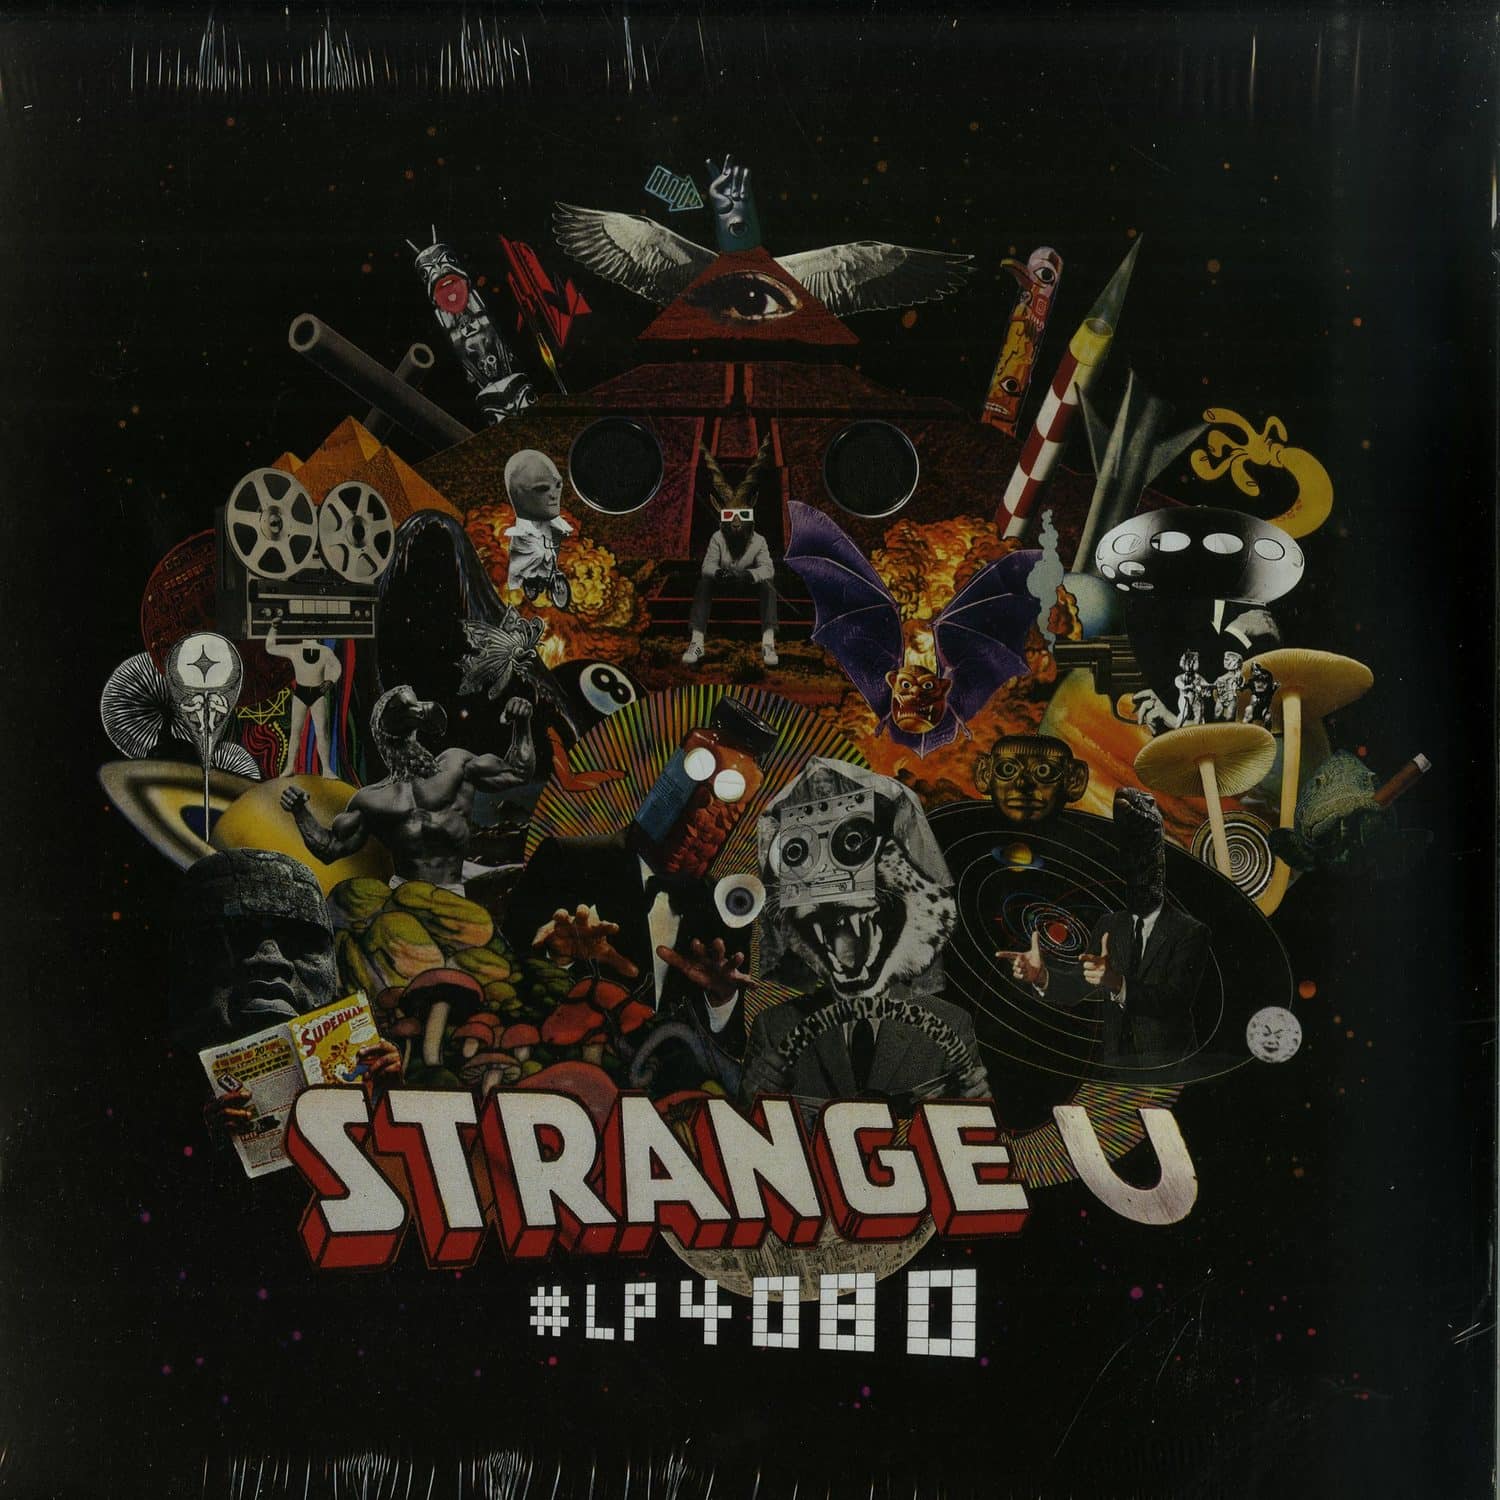 Strange U - LP4080 